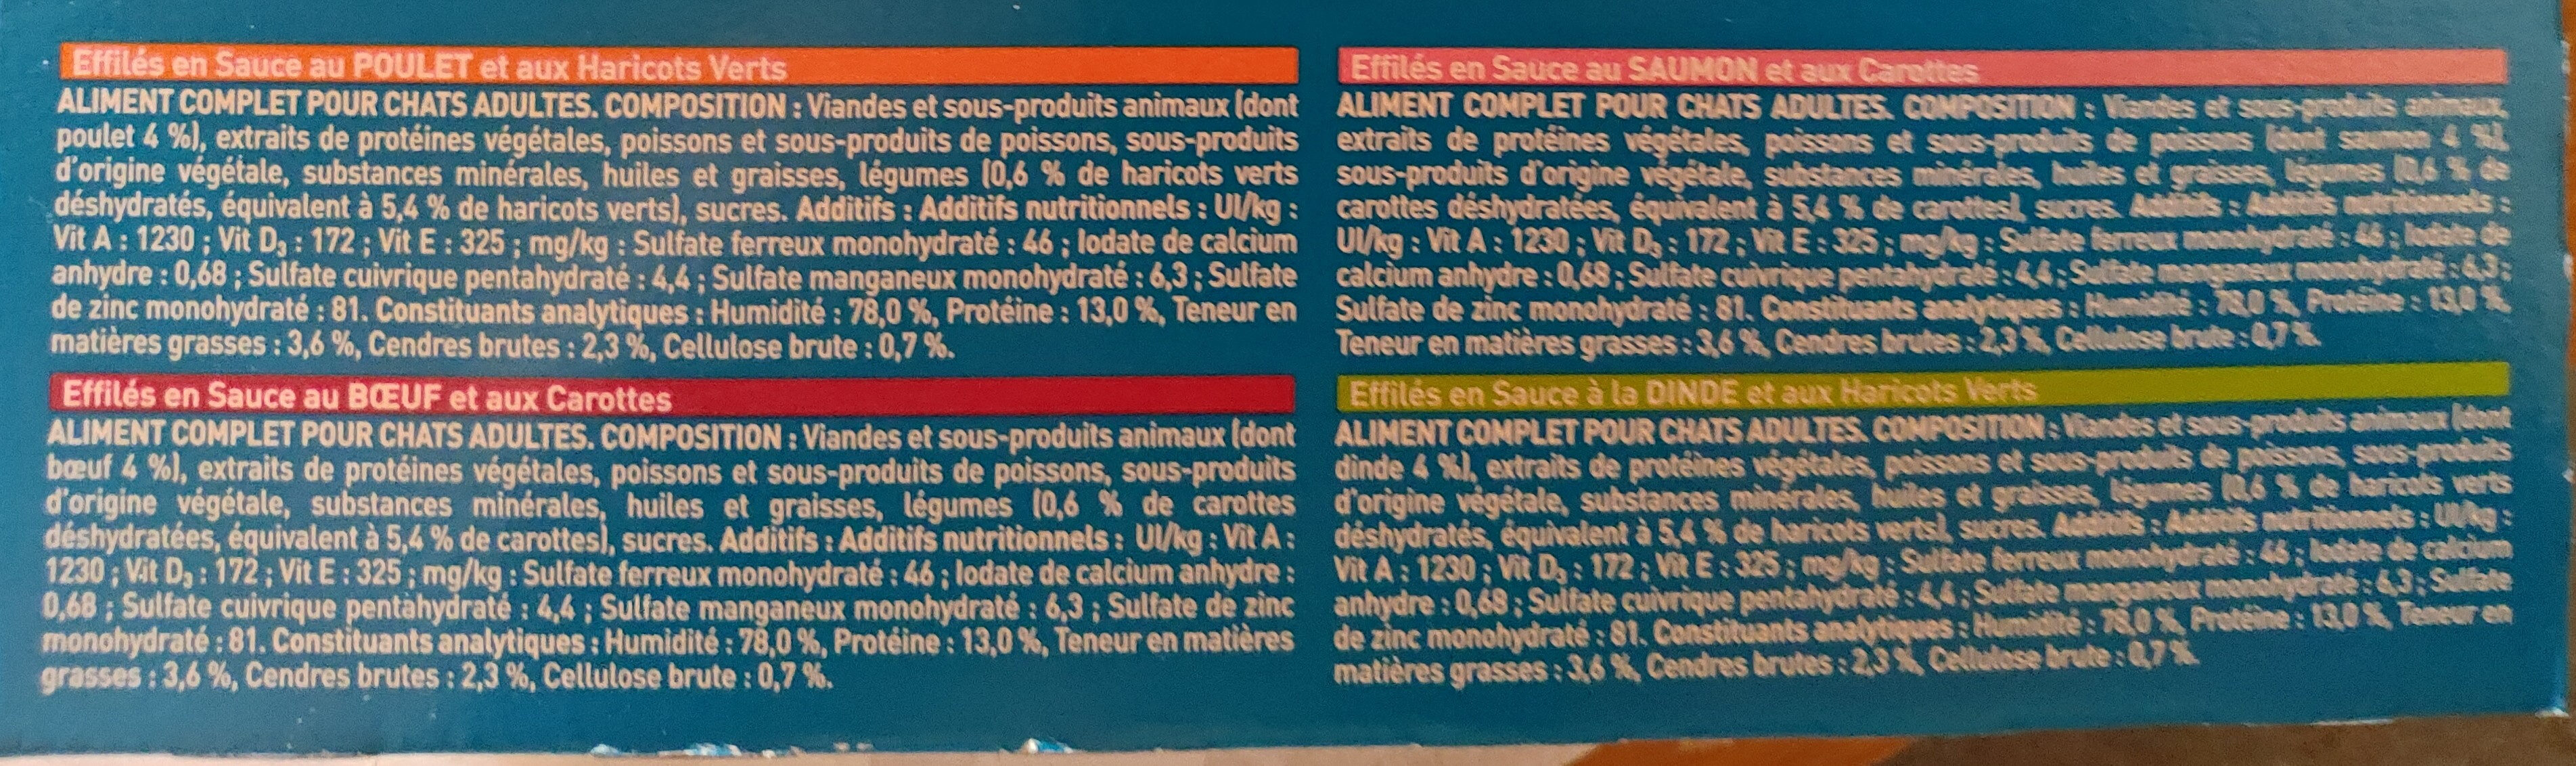 Effilés en sauce - Ingrédients - fr